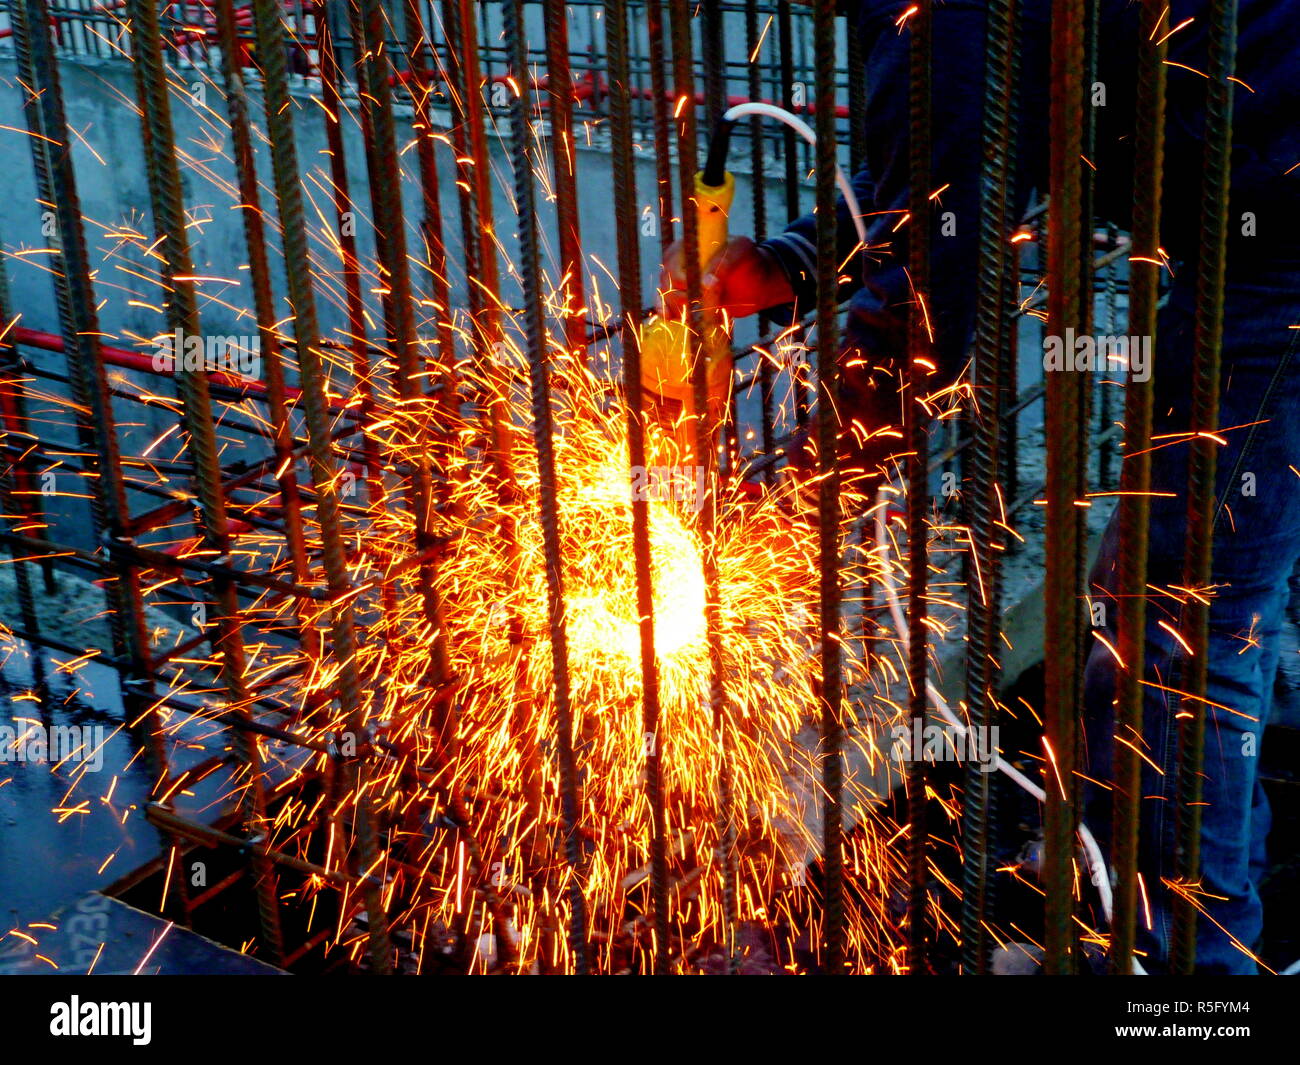 Heiße Funken des Feuers von Stahl Schneidemaschinen wenn Männer mit dem Schleifer disc Stahl oder der Sauerstoff Schweißarbeiten an Stahl schneiden Teile zusammen zu schweißen Stockfoto